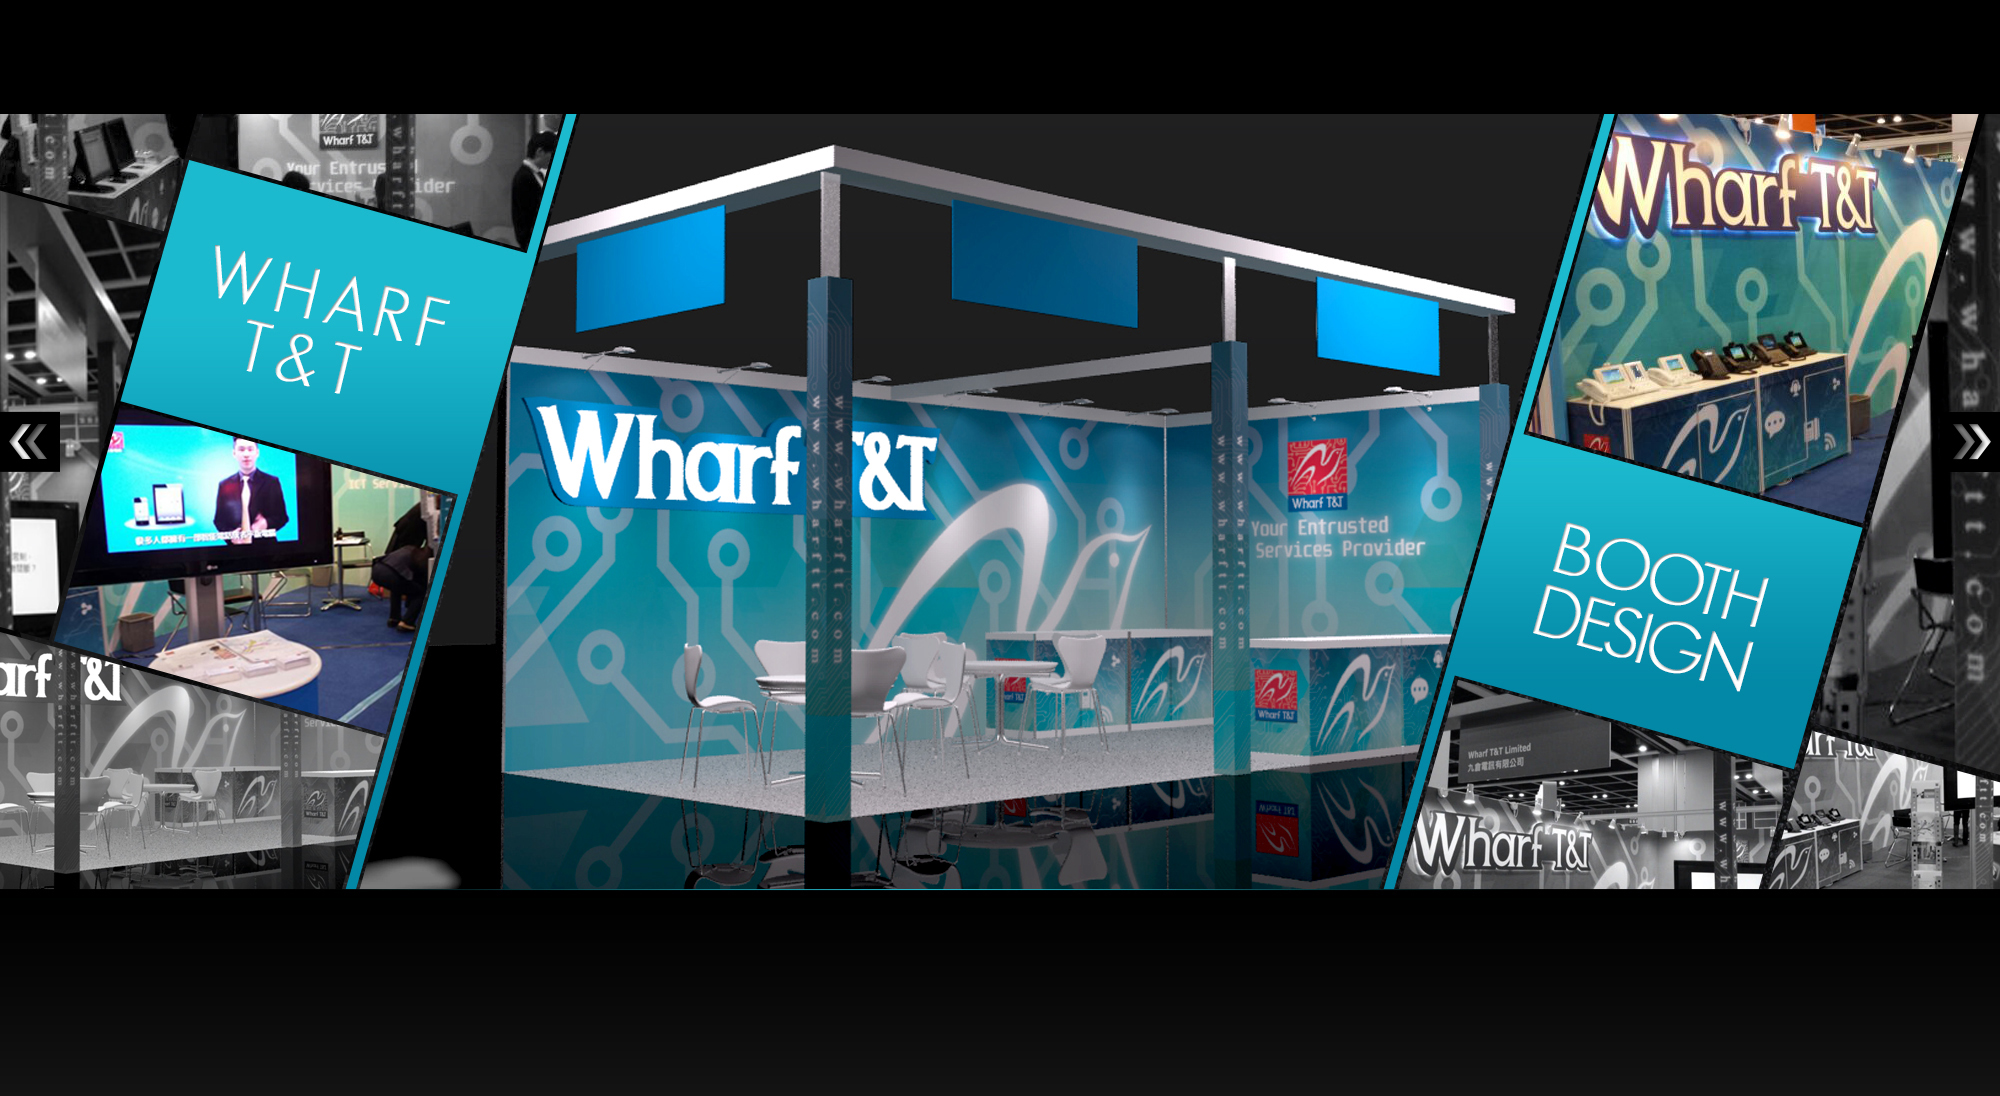 Wharf T&T Ltd. - Booth Design